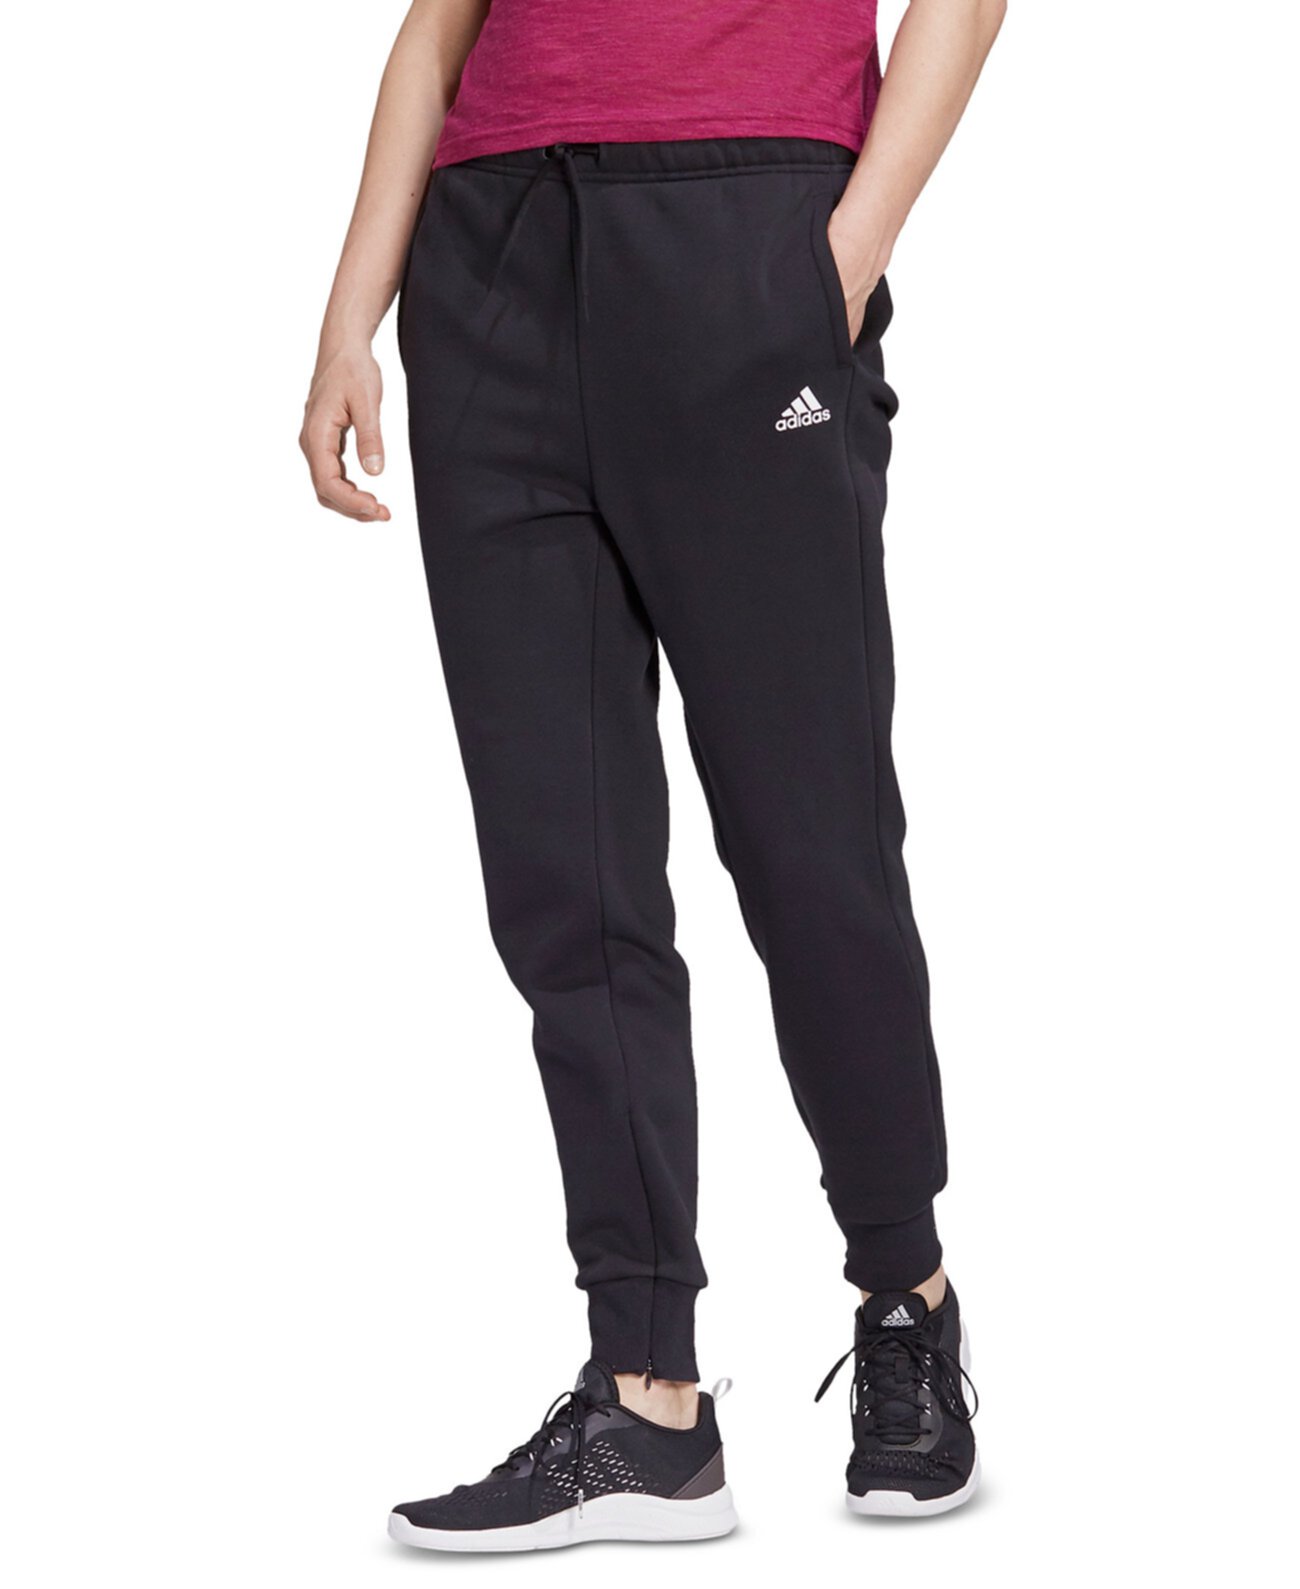 Женские спортивные штаны с логотипом Adidas